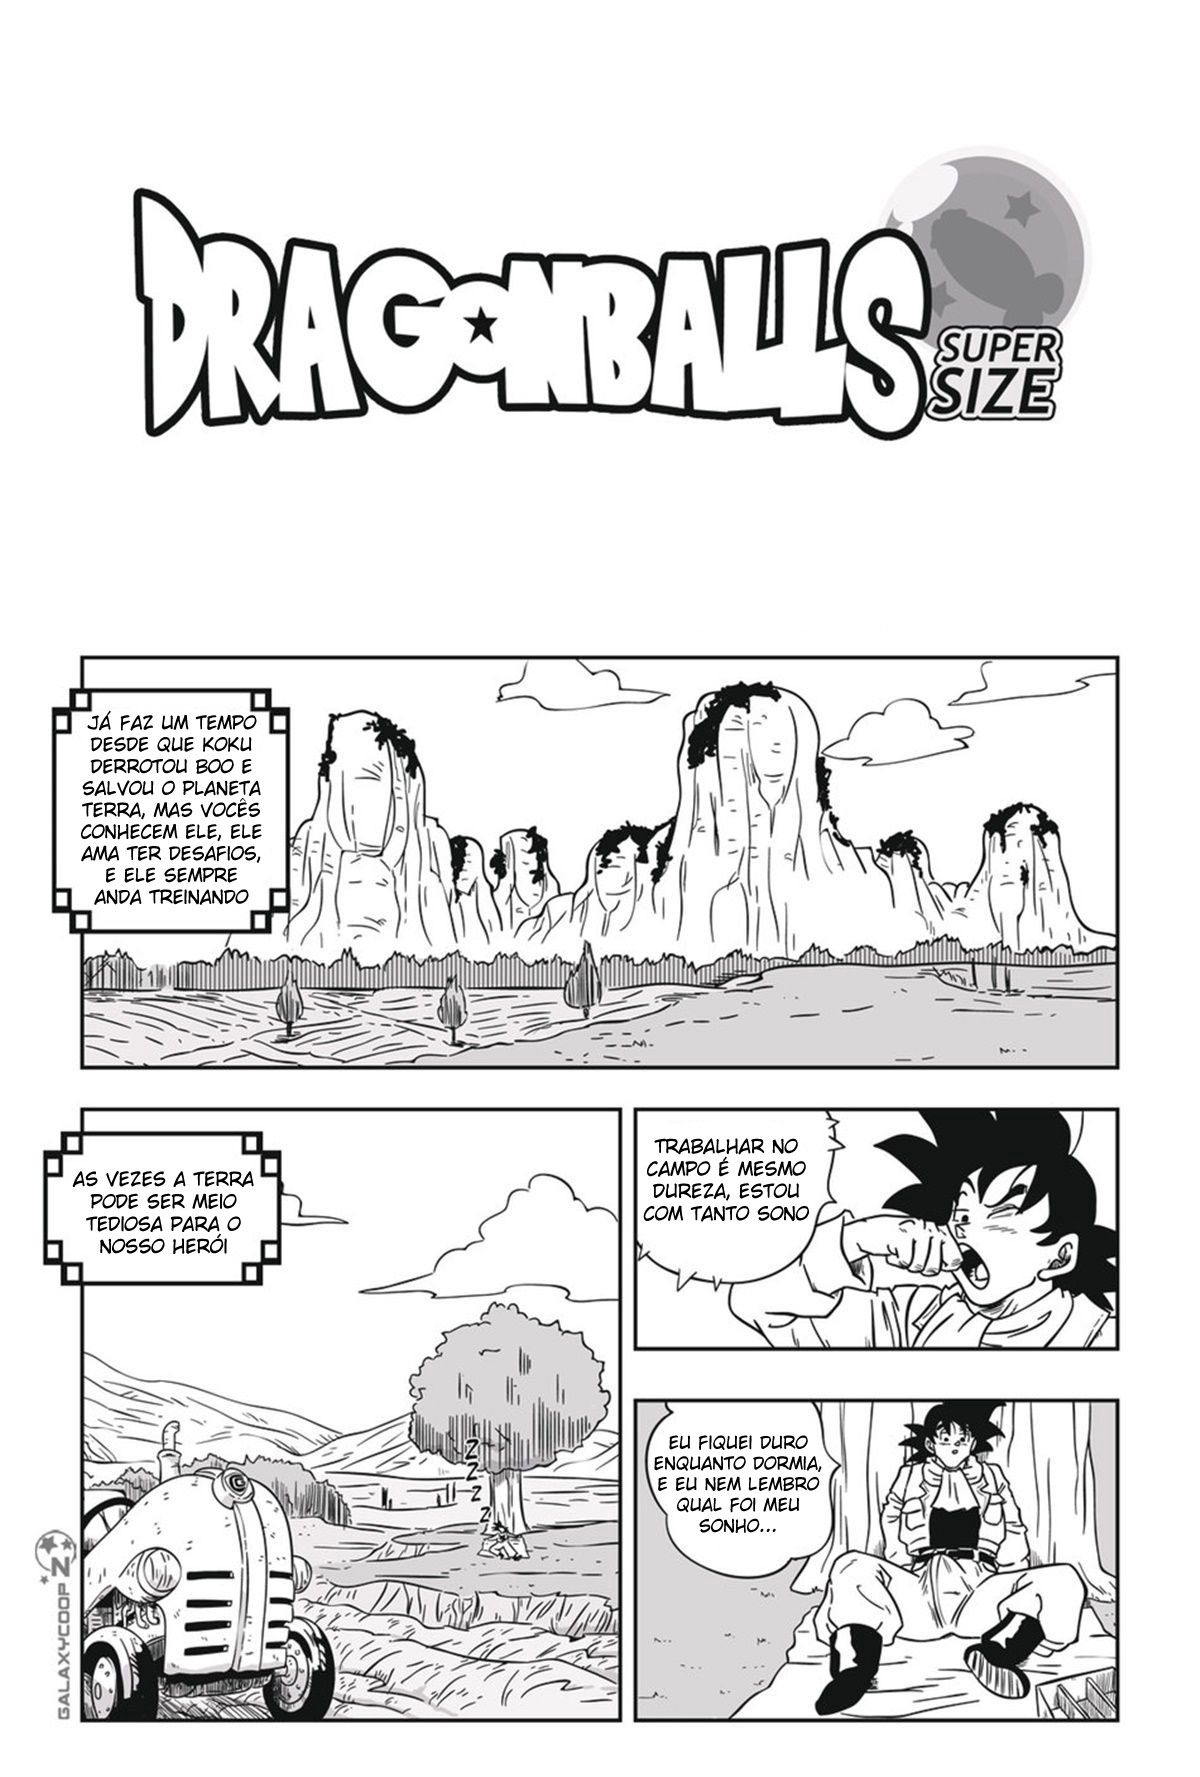 DragonBalls Super Size Capítulo 1 - Foto 6